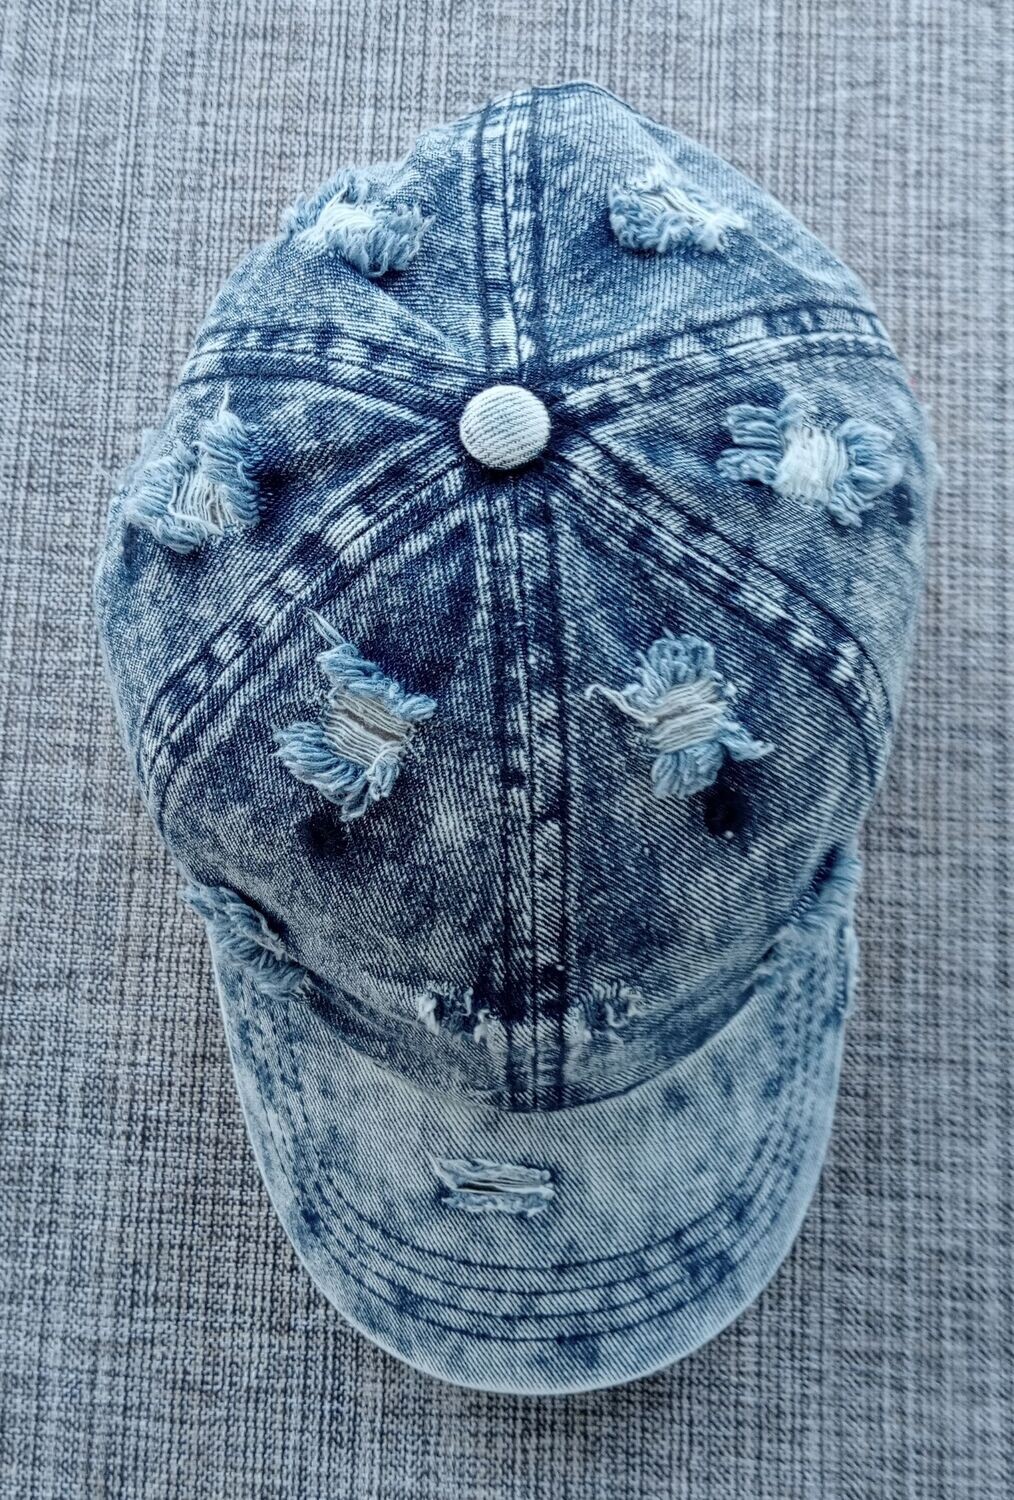 Casquette "Jeans" - Bleu Vieilli Déchiré